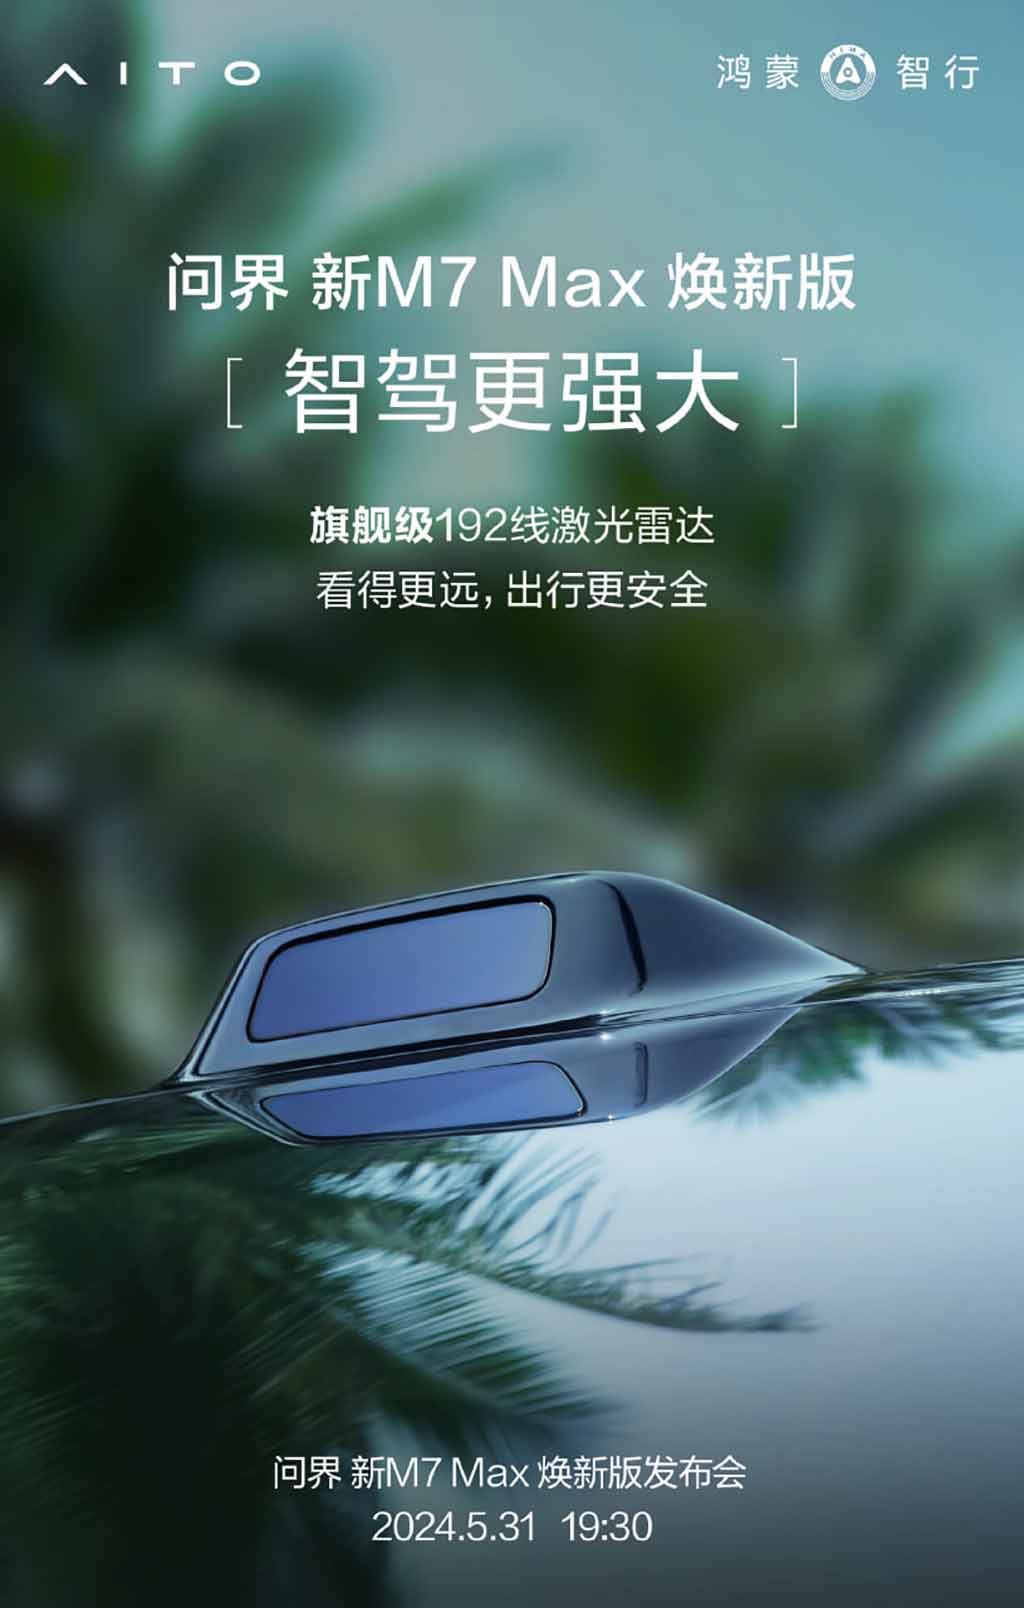 El nuevo SUV Huawei AITO M7 Max Refreshed Edition utiliza 192 líneas de LiDAR